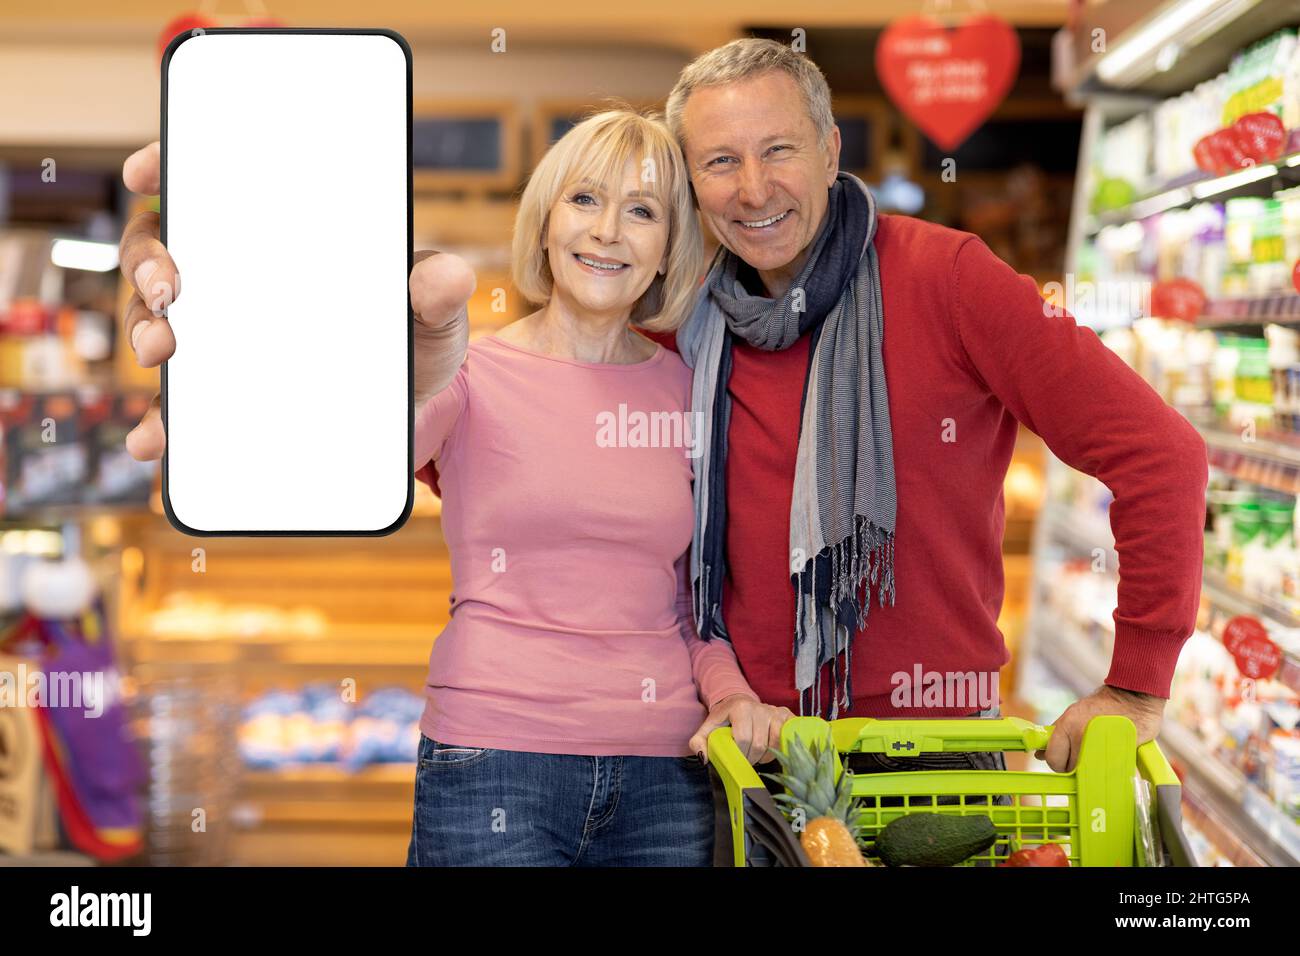 J'aime faire du shopping en couple dans un supermarché, montrer un smartphone, une maquette Banque D'Images